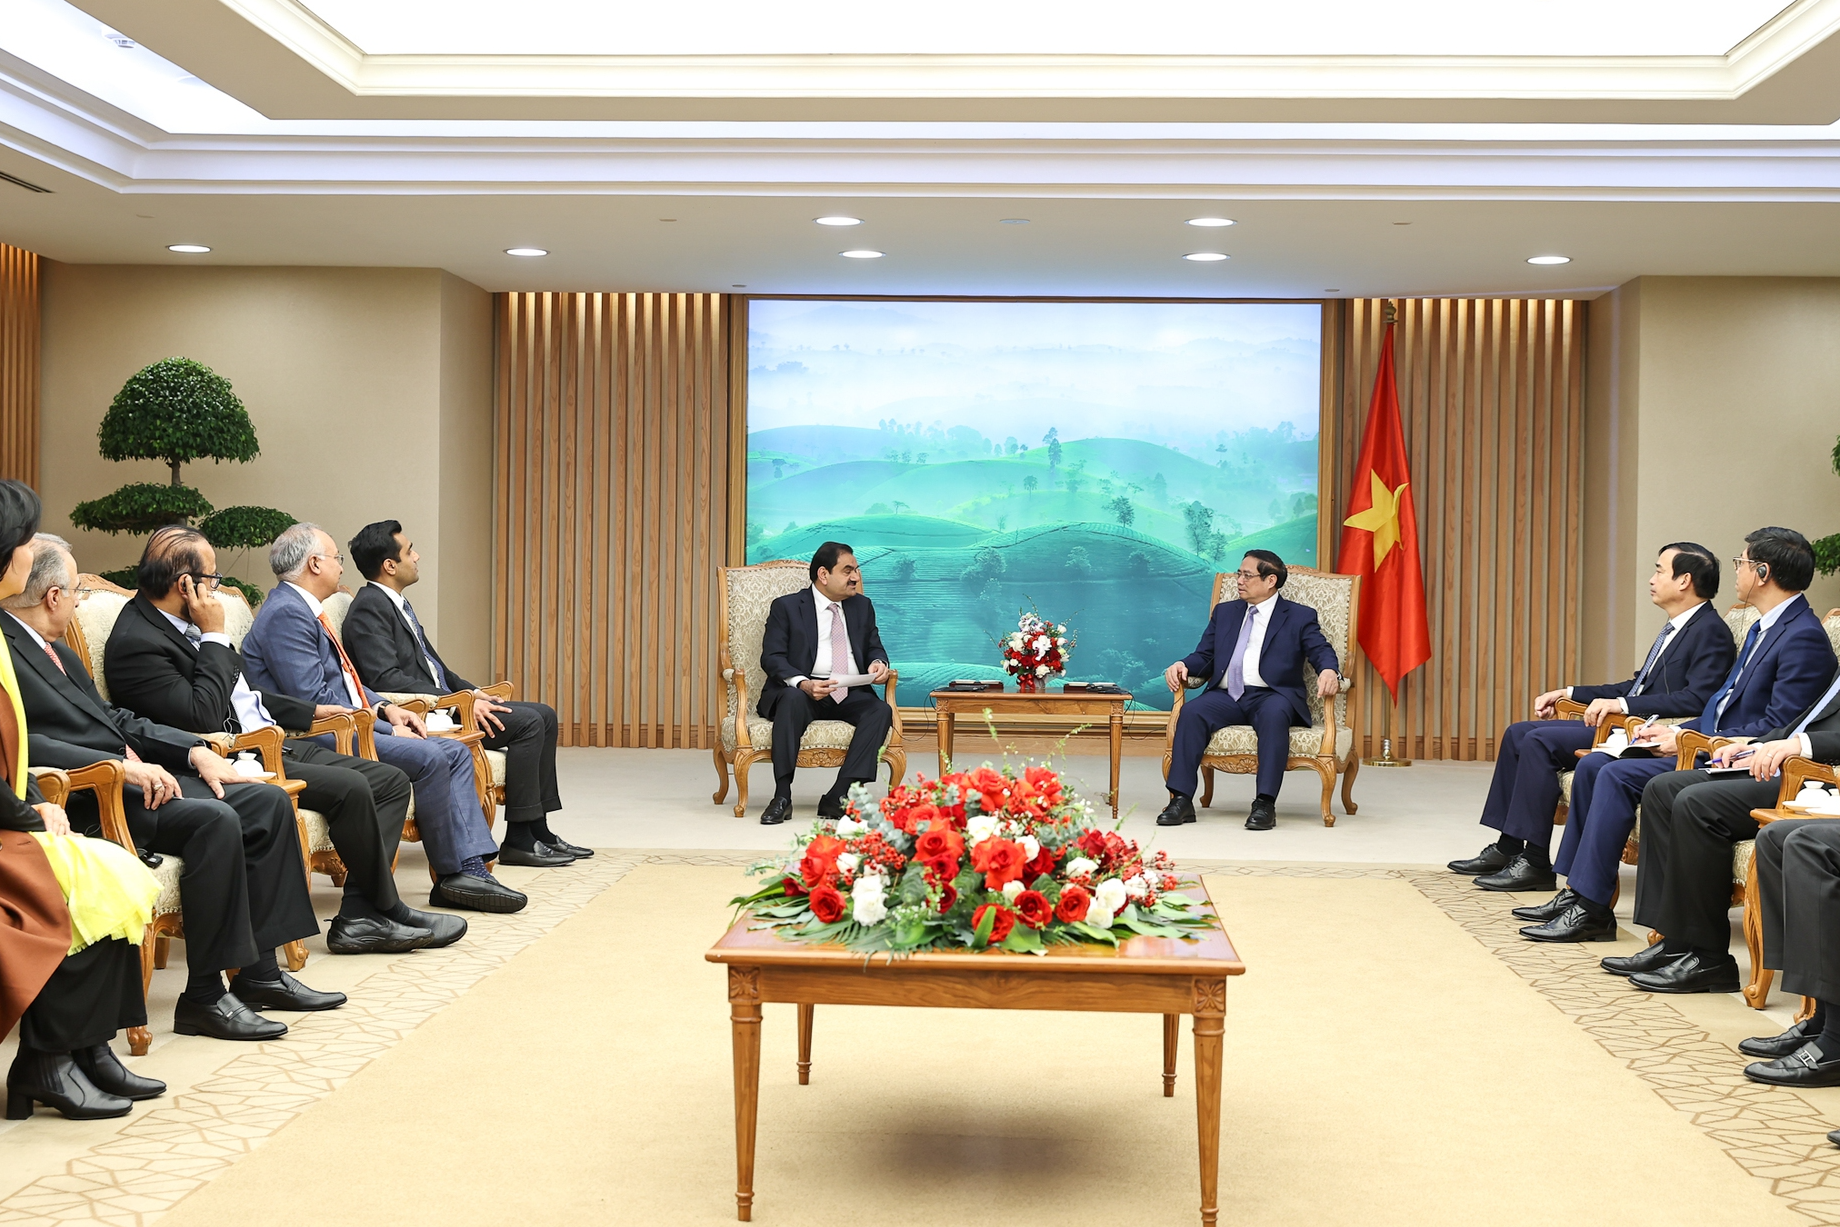 Thủ tướng khẳng định, Việt Nam sẽ hỗ trợ, tạo mọi điều kiện thuận lợi cho doanh nghiệp, trong đó có doanh nghiệp Ấn Độ nói chung và Adani nói riêng triển khai các hoạt động đầu tư kinh doanh có hiệu quả và bền vững tại Việt Nam - Ảnh: VGP/Nhật Bắc